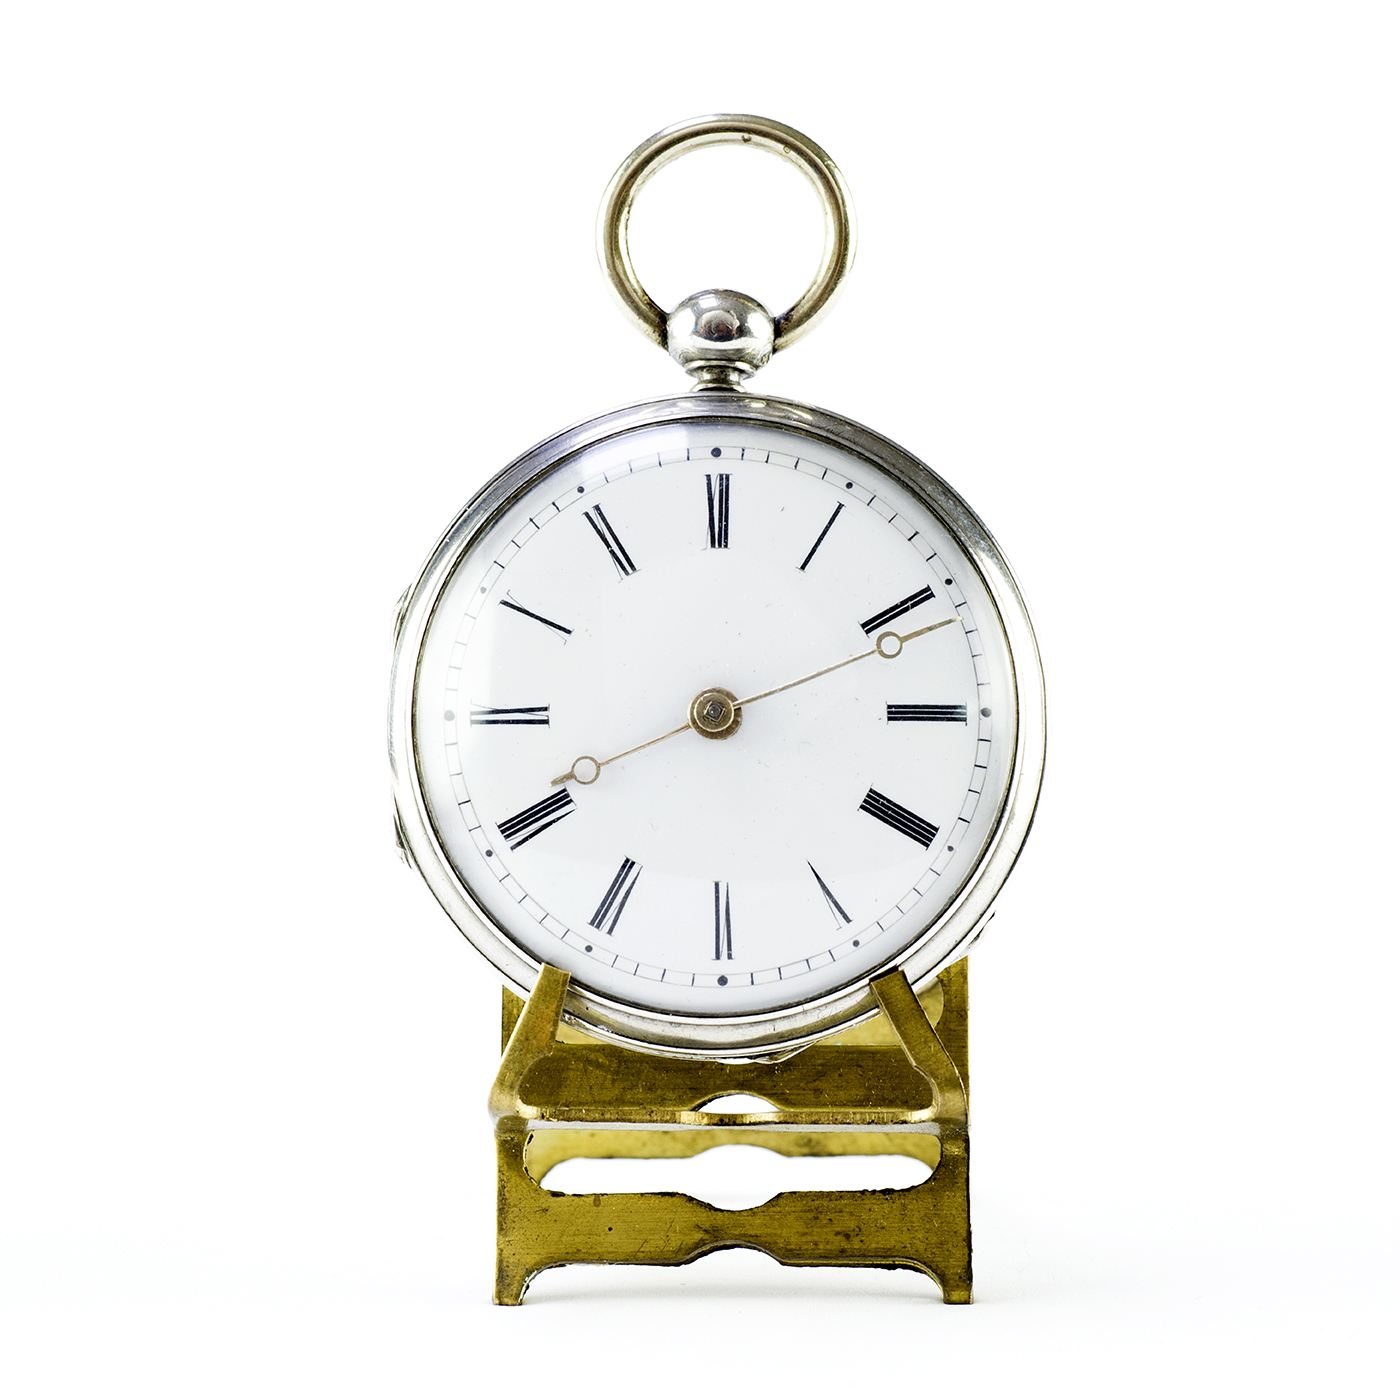 Reloj de bolsillo, Lepine, Verge Fusee (catalino). Francia, ca. 1825